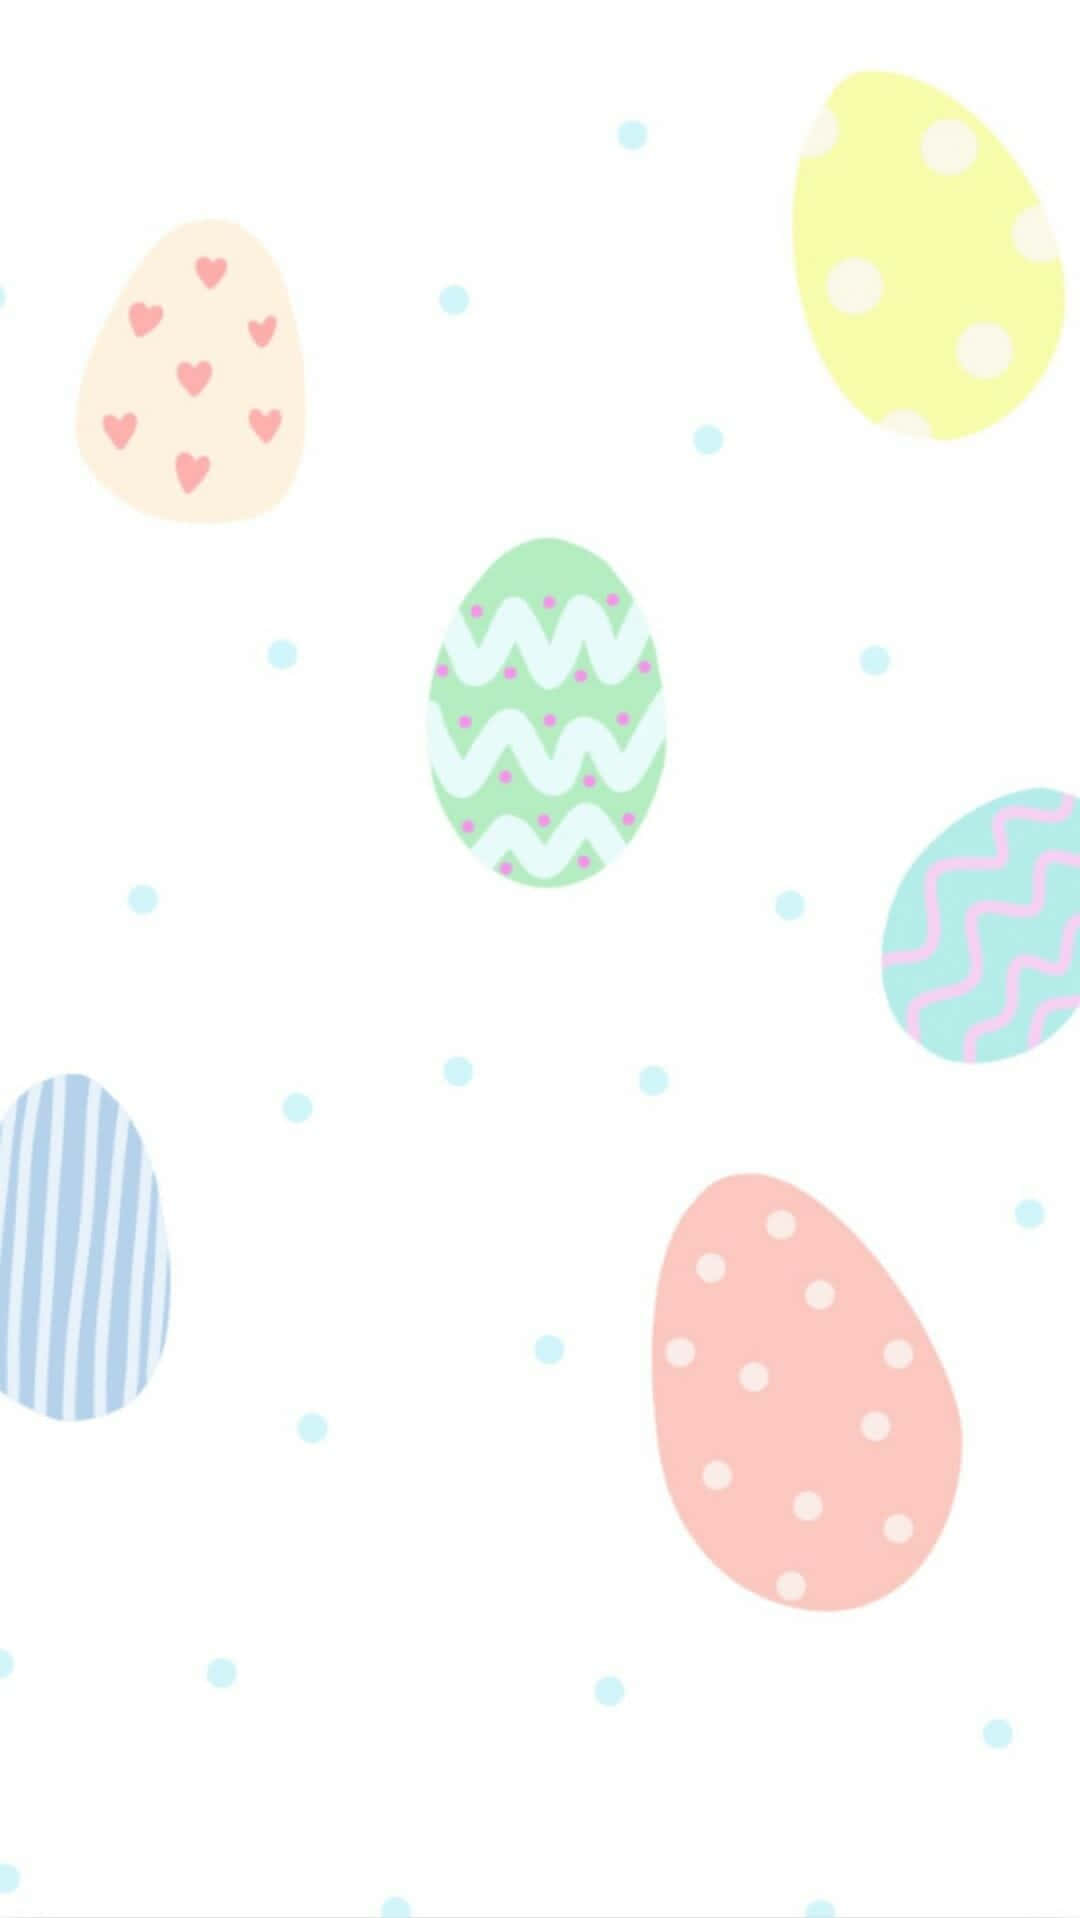 Feiernsie Dieses Jahr Ostern Mit Diesem Entzückenden Haseninspirierten Iphone-design! Wallpaper